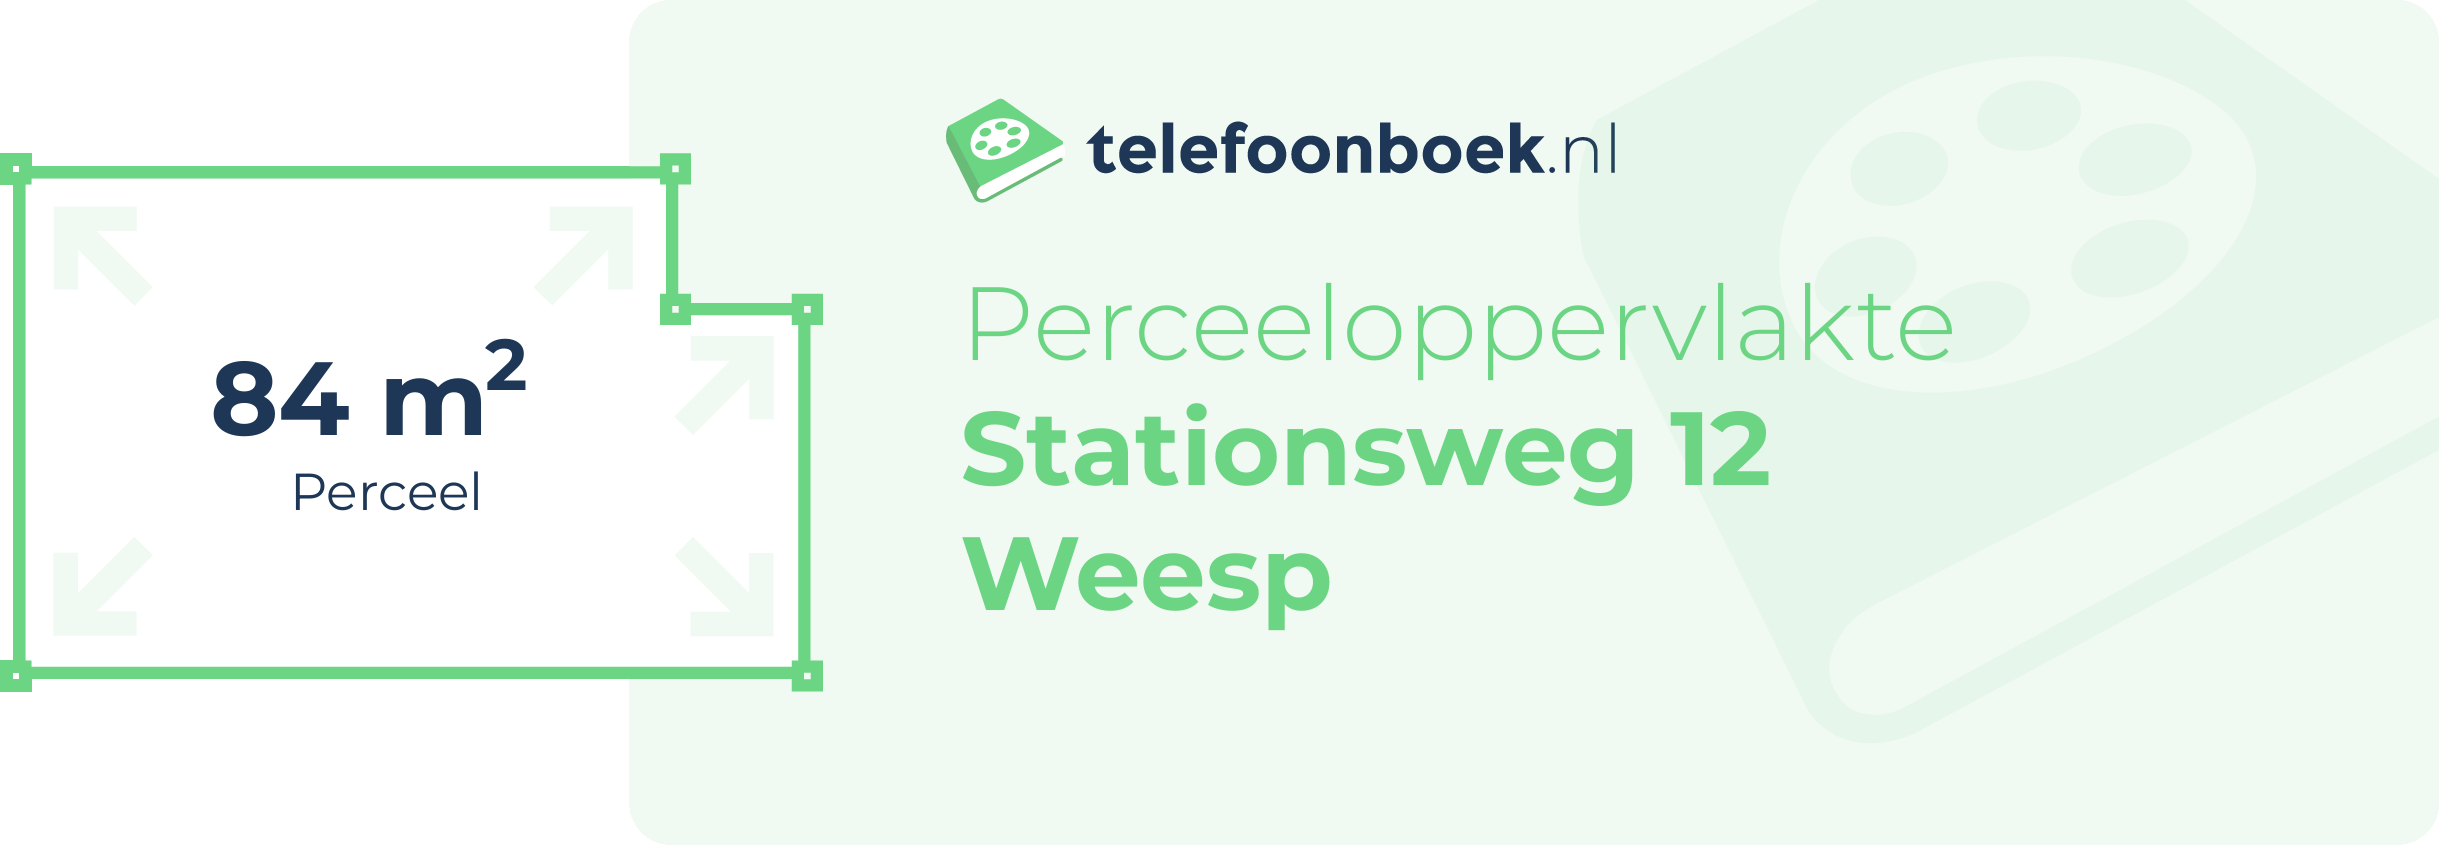 Perceeloppervlakte Stationsweg 12 Weesp